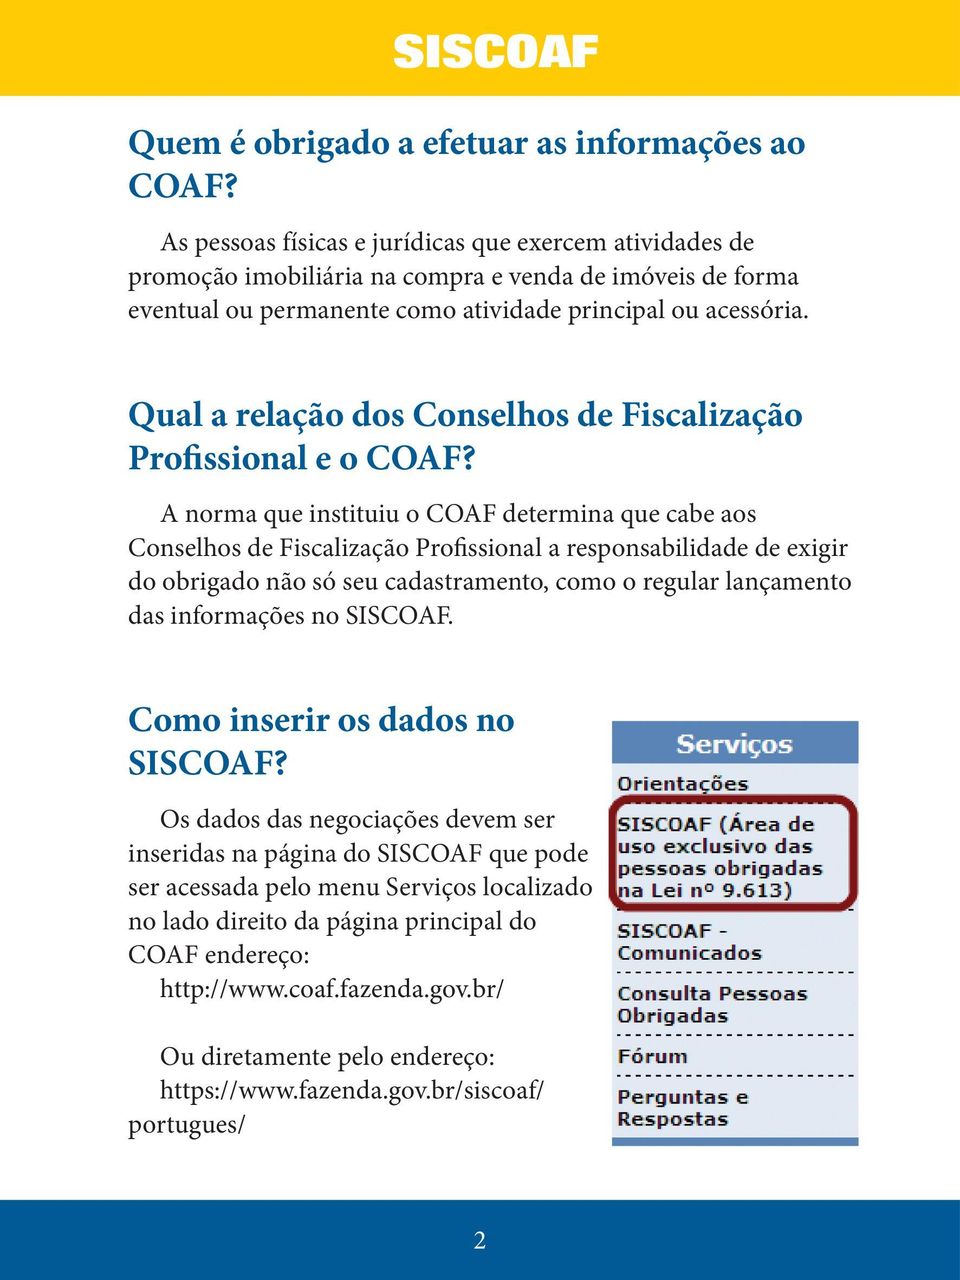 Qual a relação dos Conselhos de Fiscalização Profissional e o COAF?